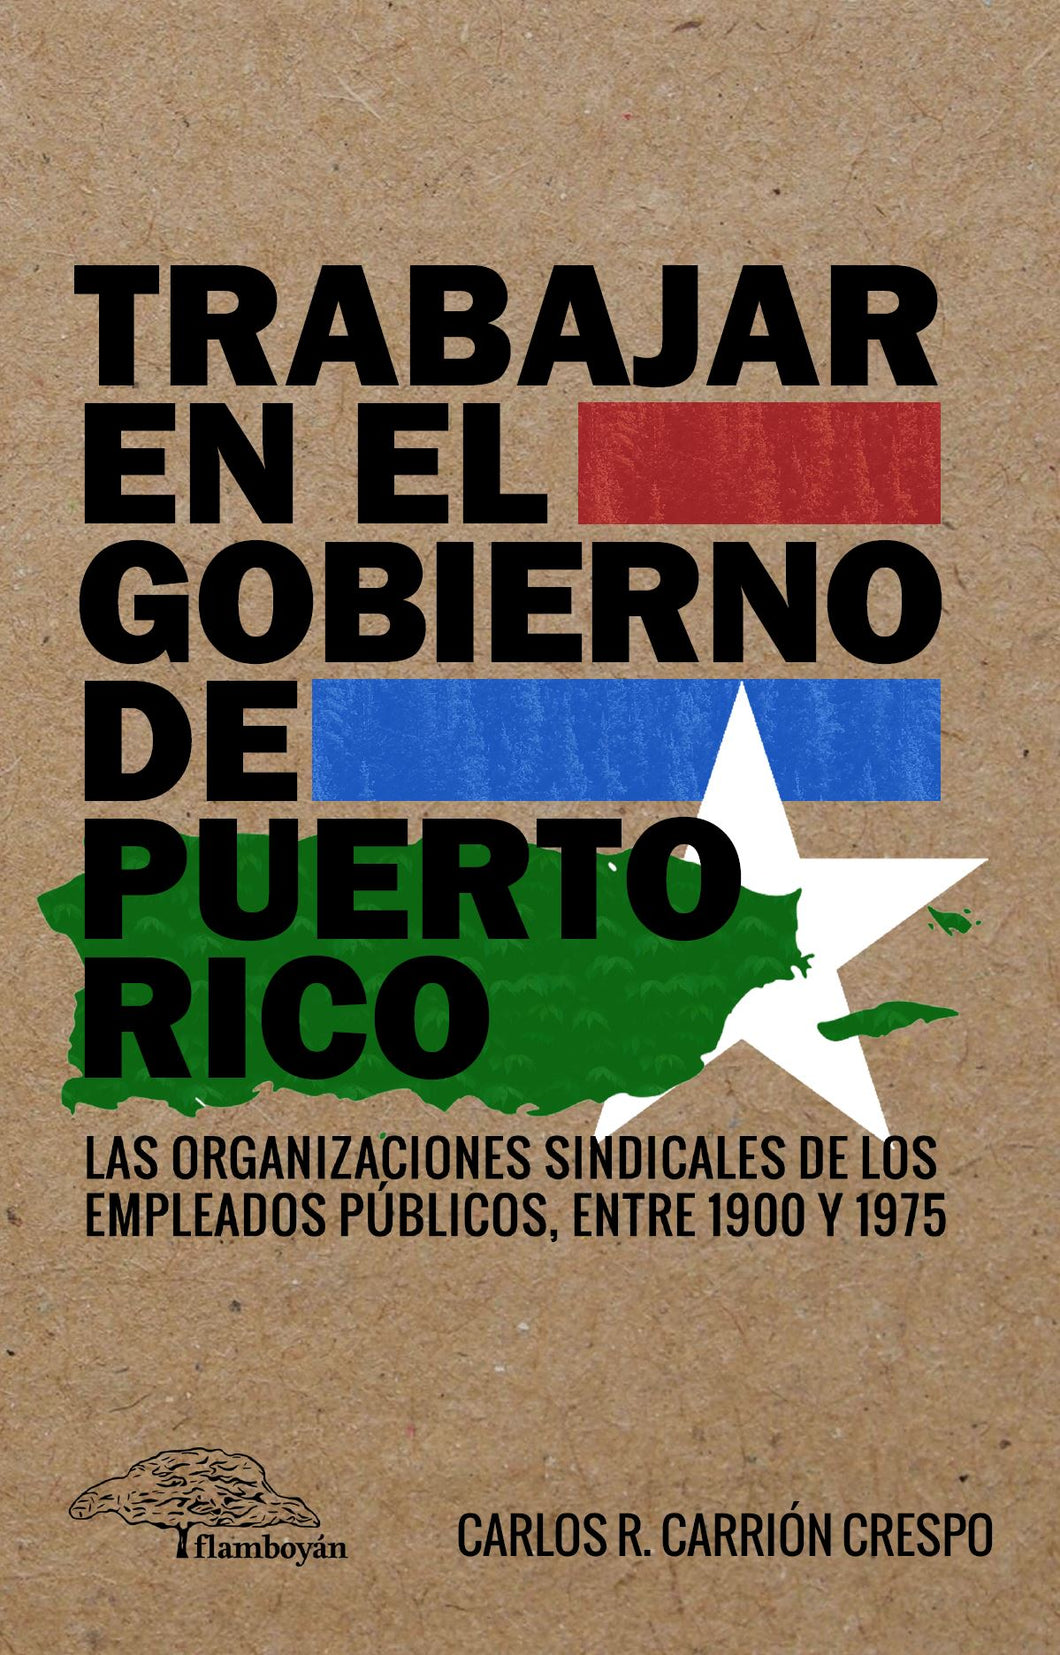 Trabajar en el gobierno de Puerto Rico: Carlos R. Carrión Crespo